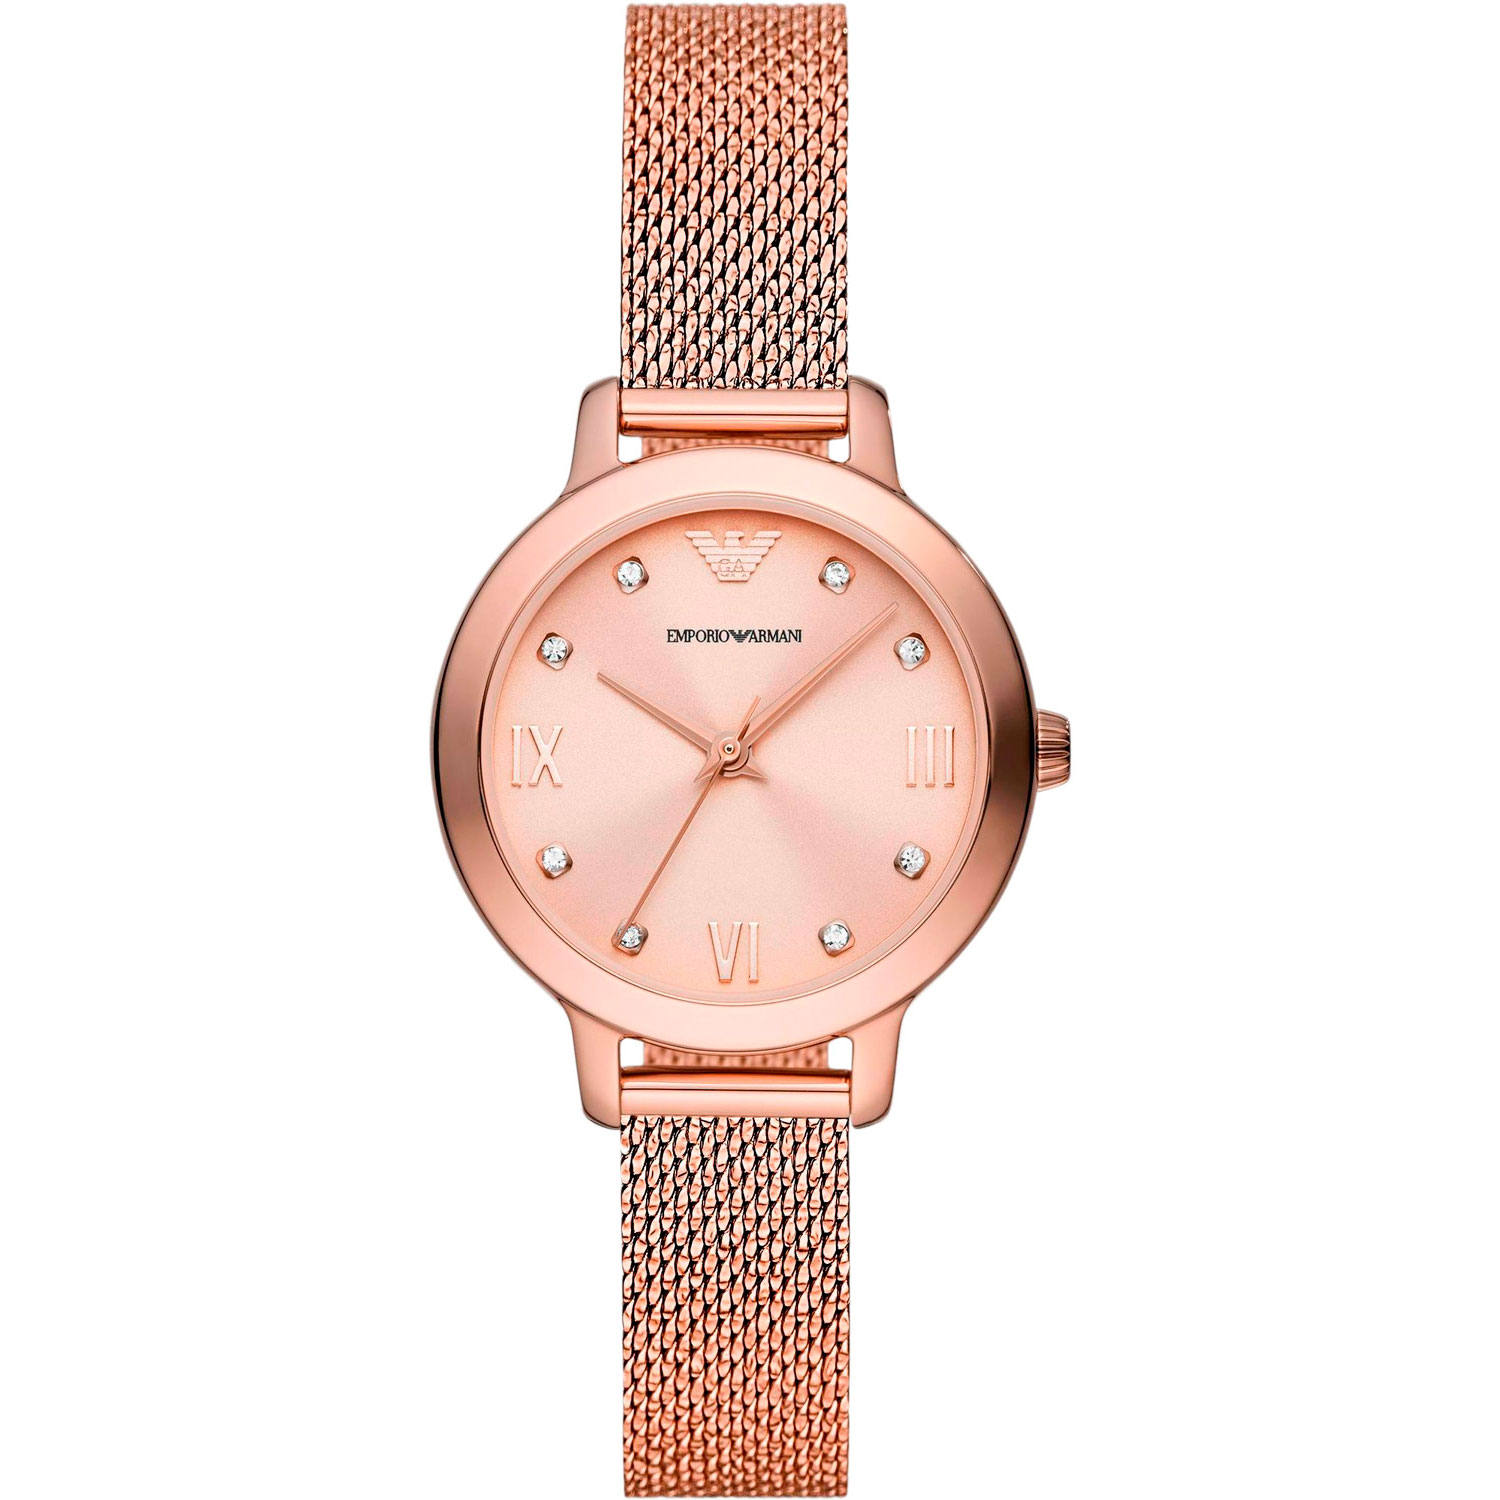 наручные часы emporio armani ar11512 розовый золотой Часы Emporio armani AR11512